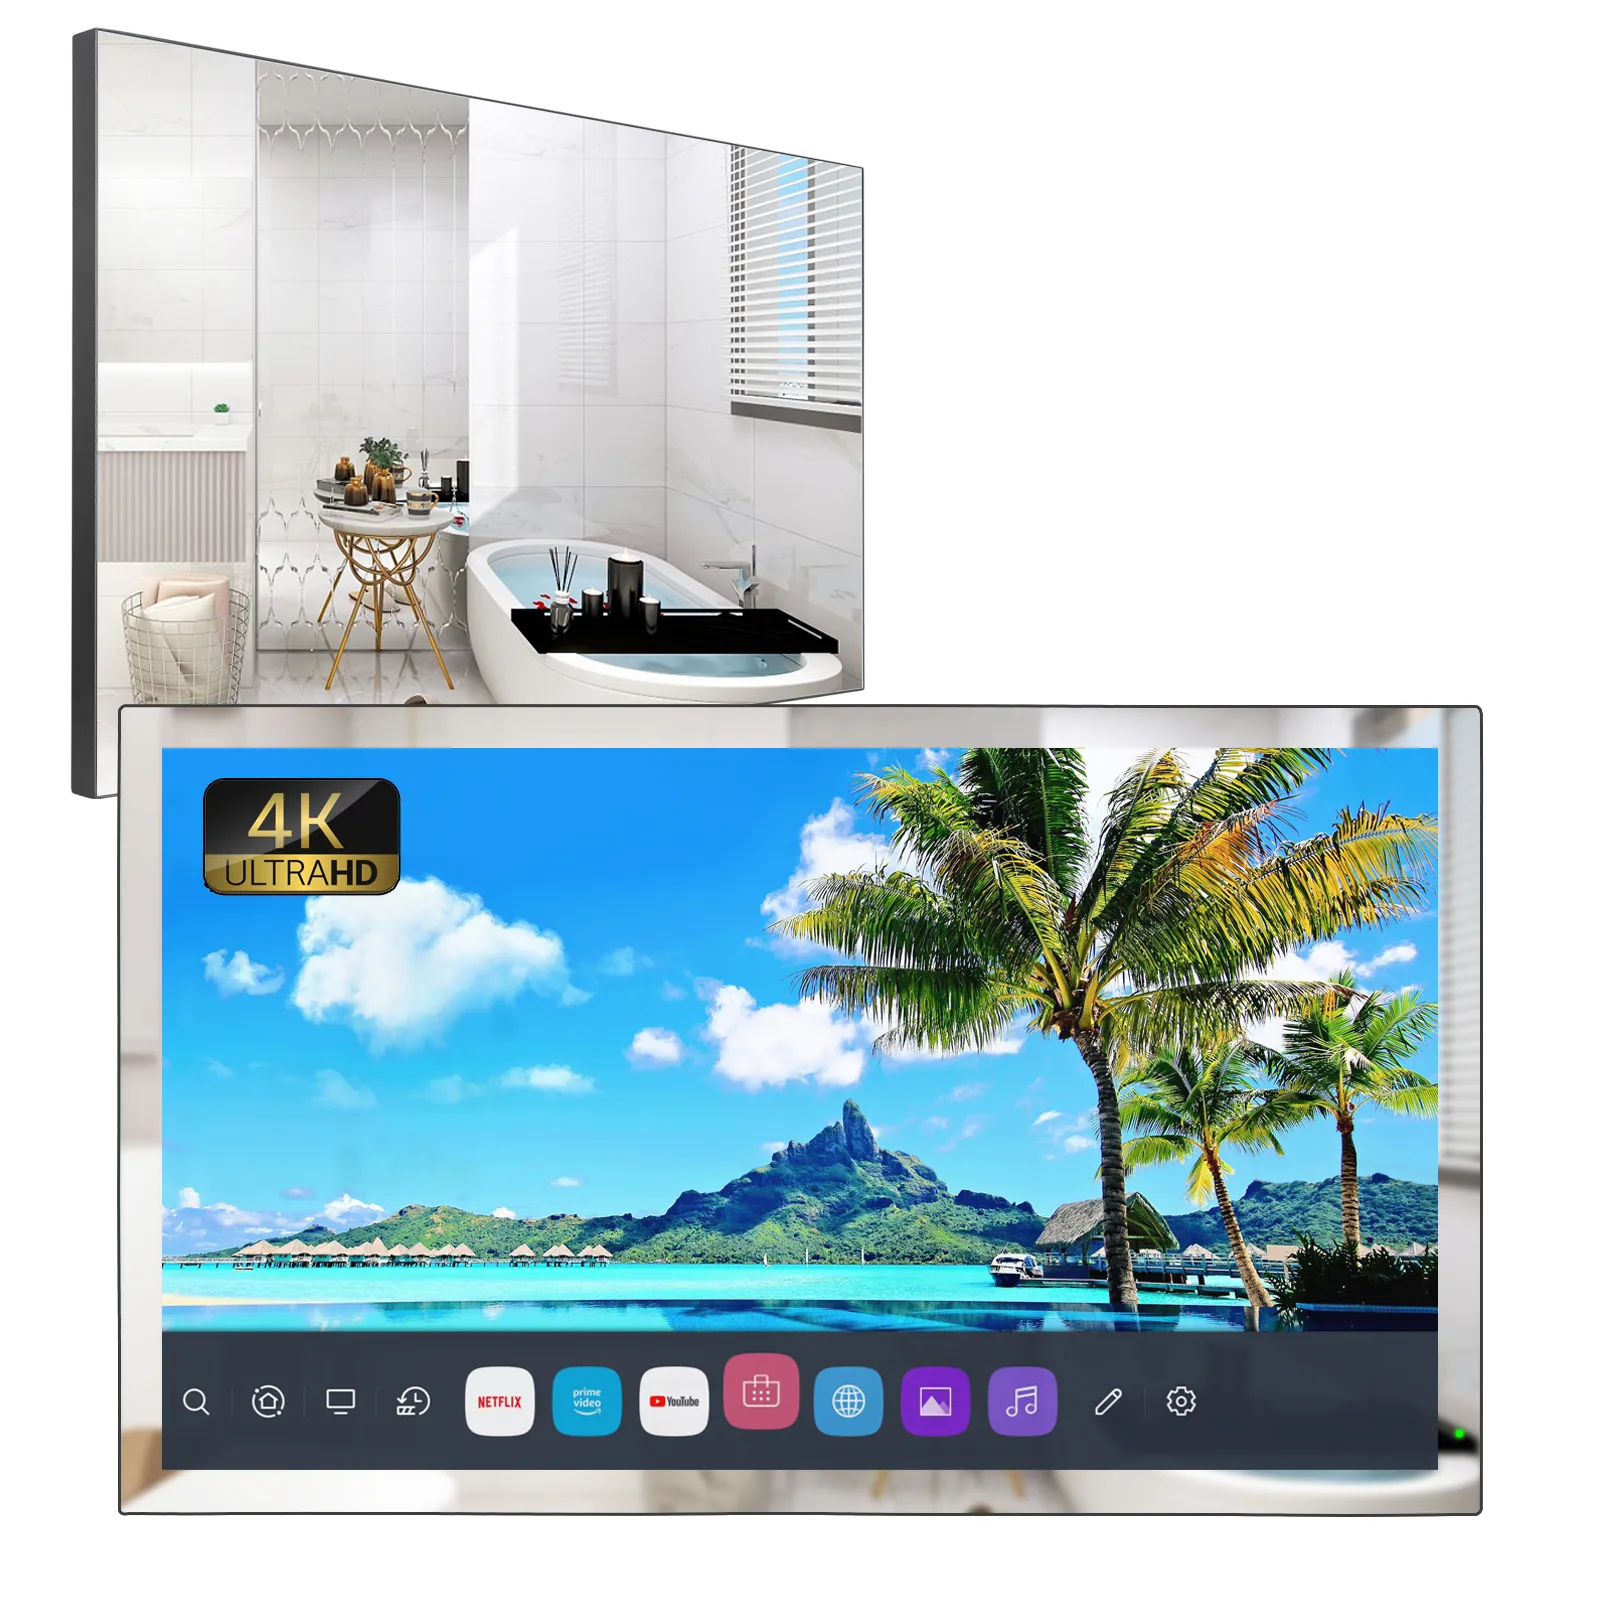 Soulaca 32 polegadas 4K Webos Mirror Led Television For Banheiro Hotel Ai Alexa Controle de Voice Wi-Fi Bluetooth TV Inteligente à prova d'água 2023 Amazon Novo modelo